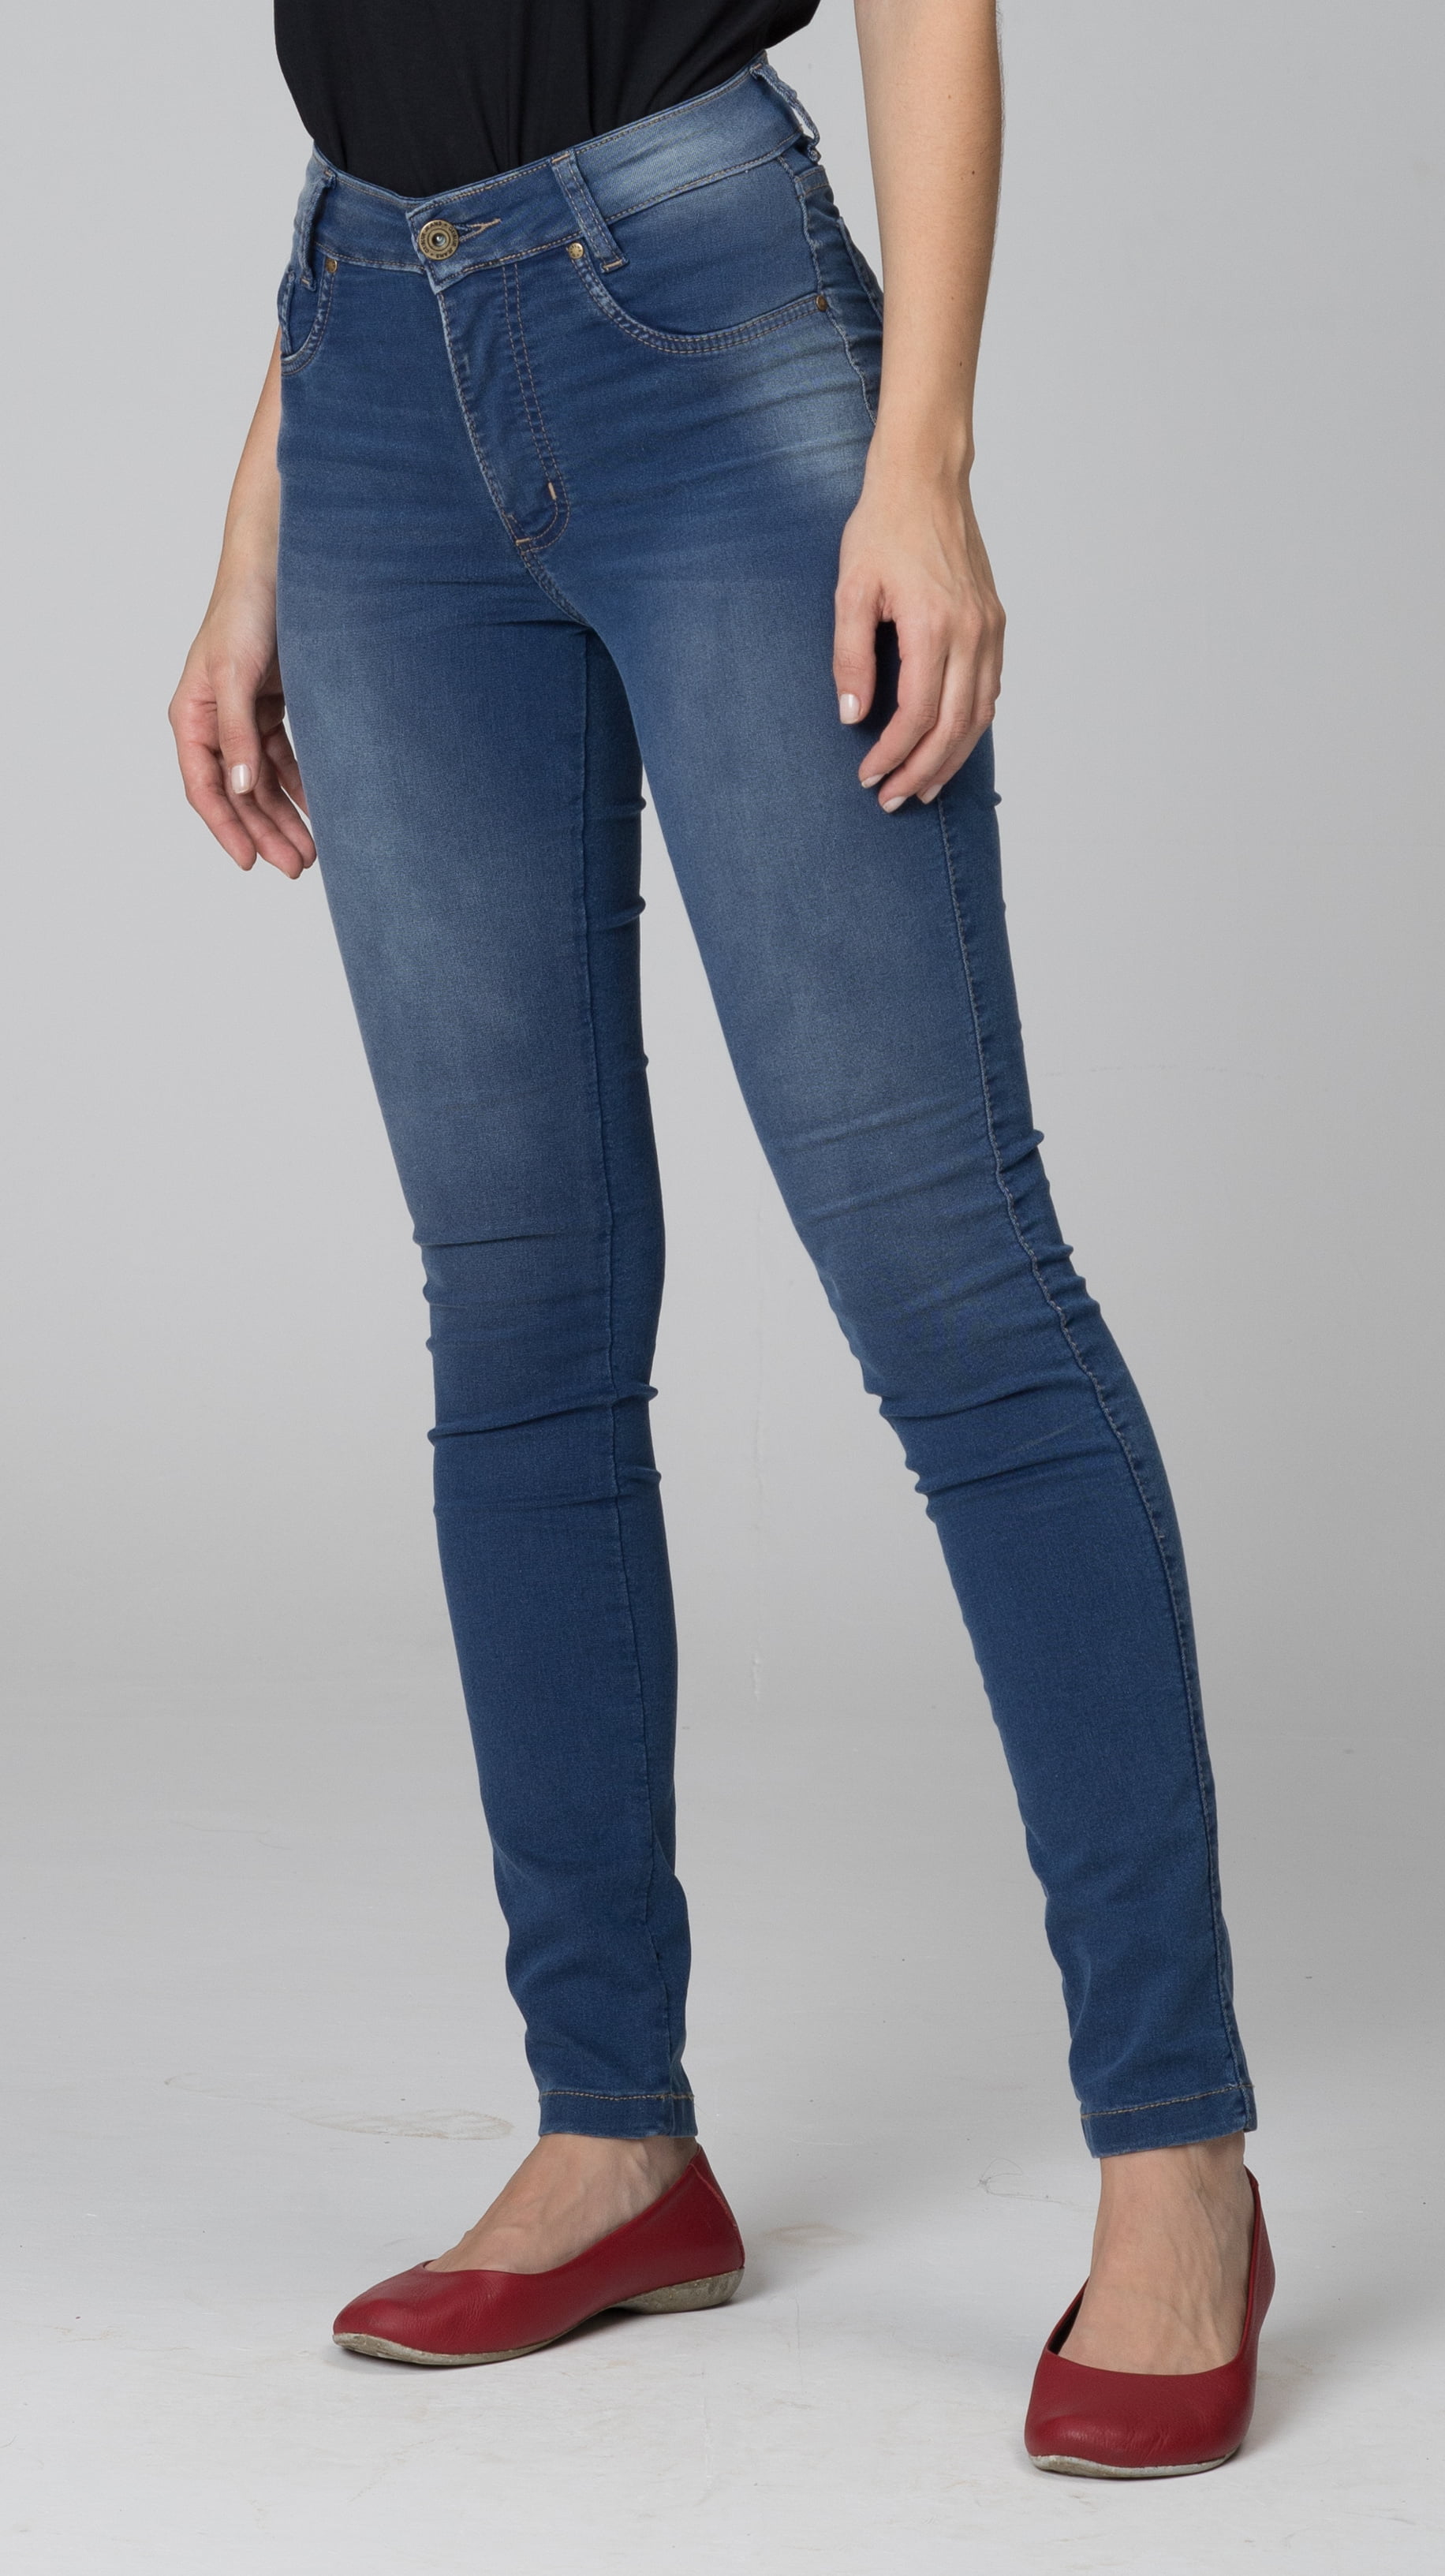 Calça Jeans Cintura Alta - Oxiblue Jeans